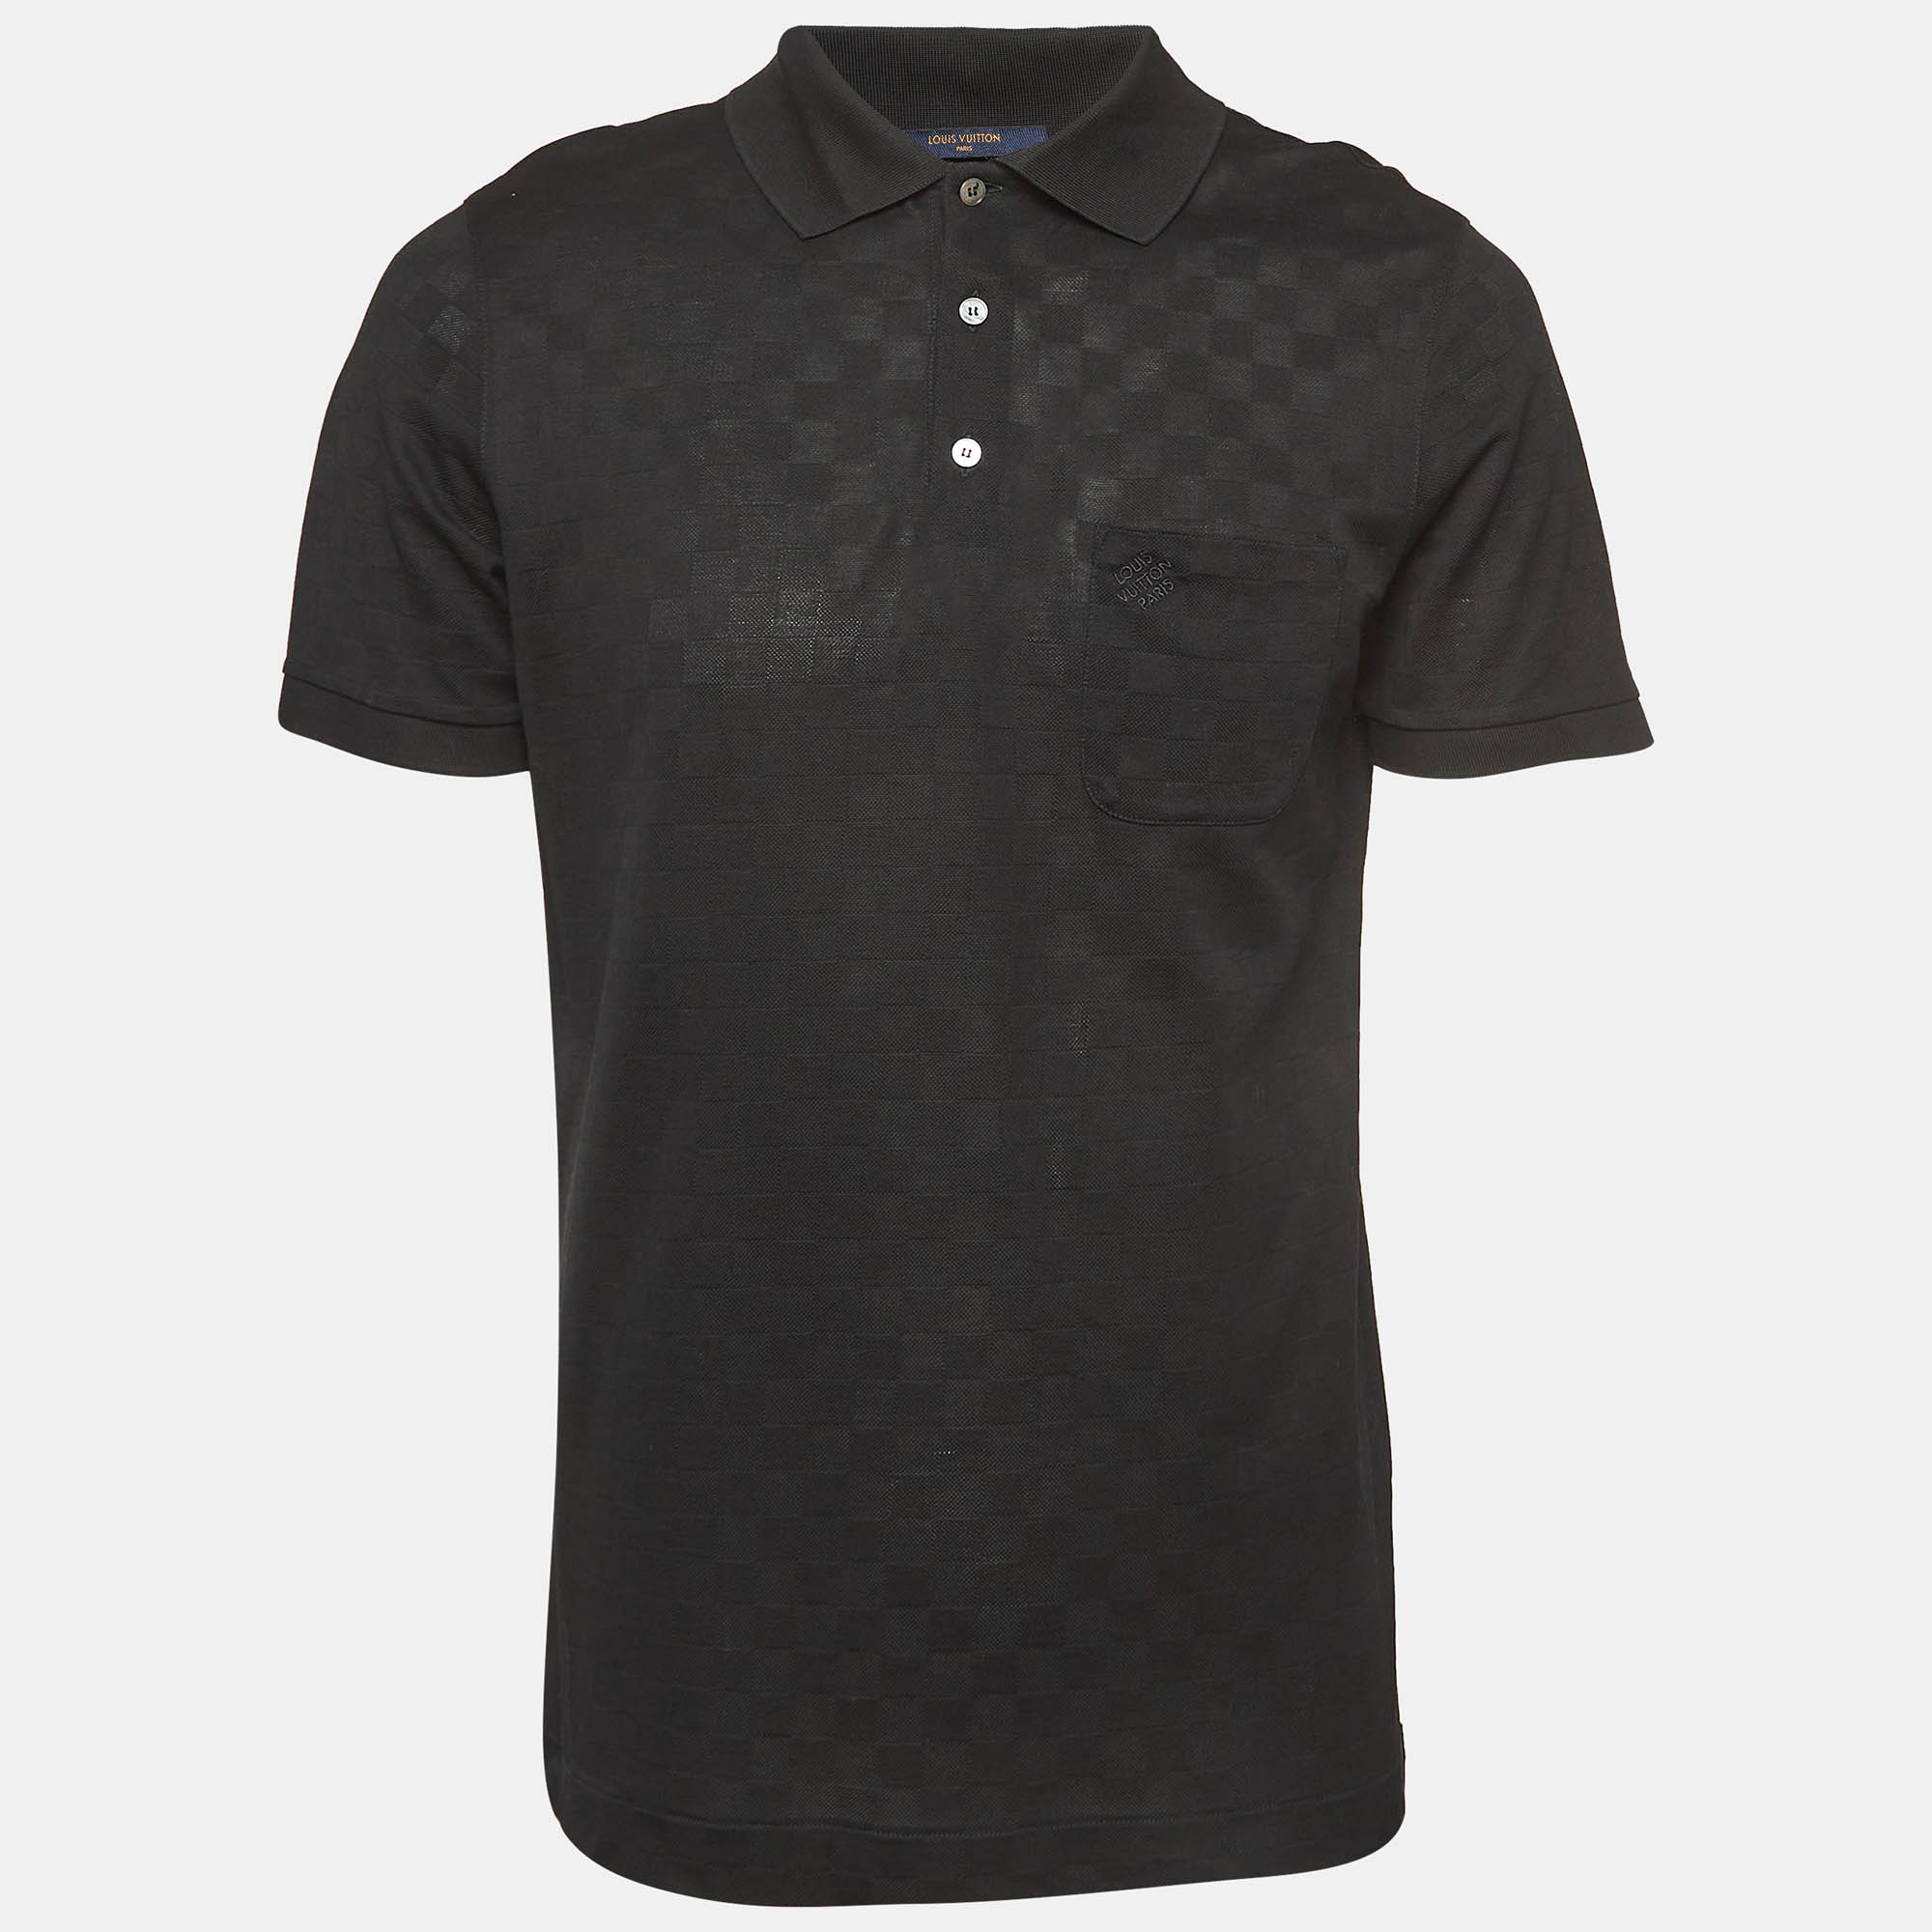 Louis vuitton black patterned cotton knit polo t-shirt l